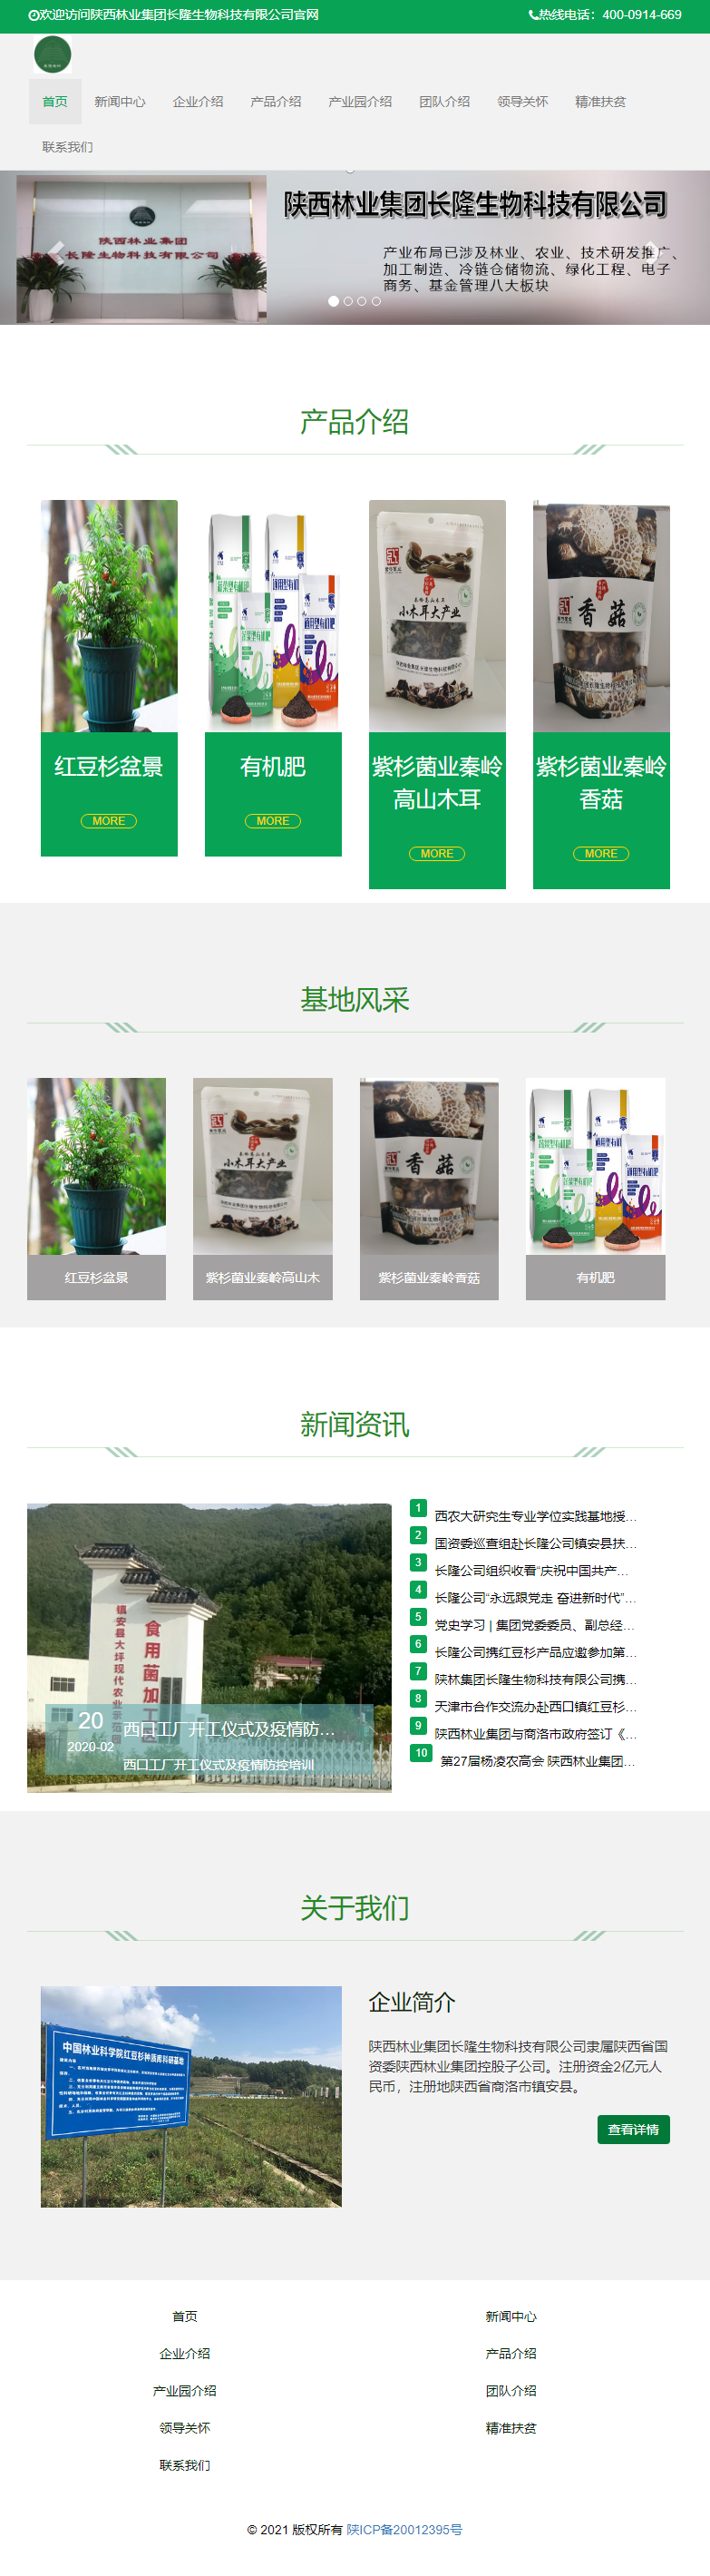 陕西林业集团长隆生物科技有限公司网站案例